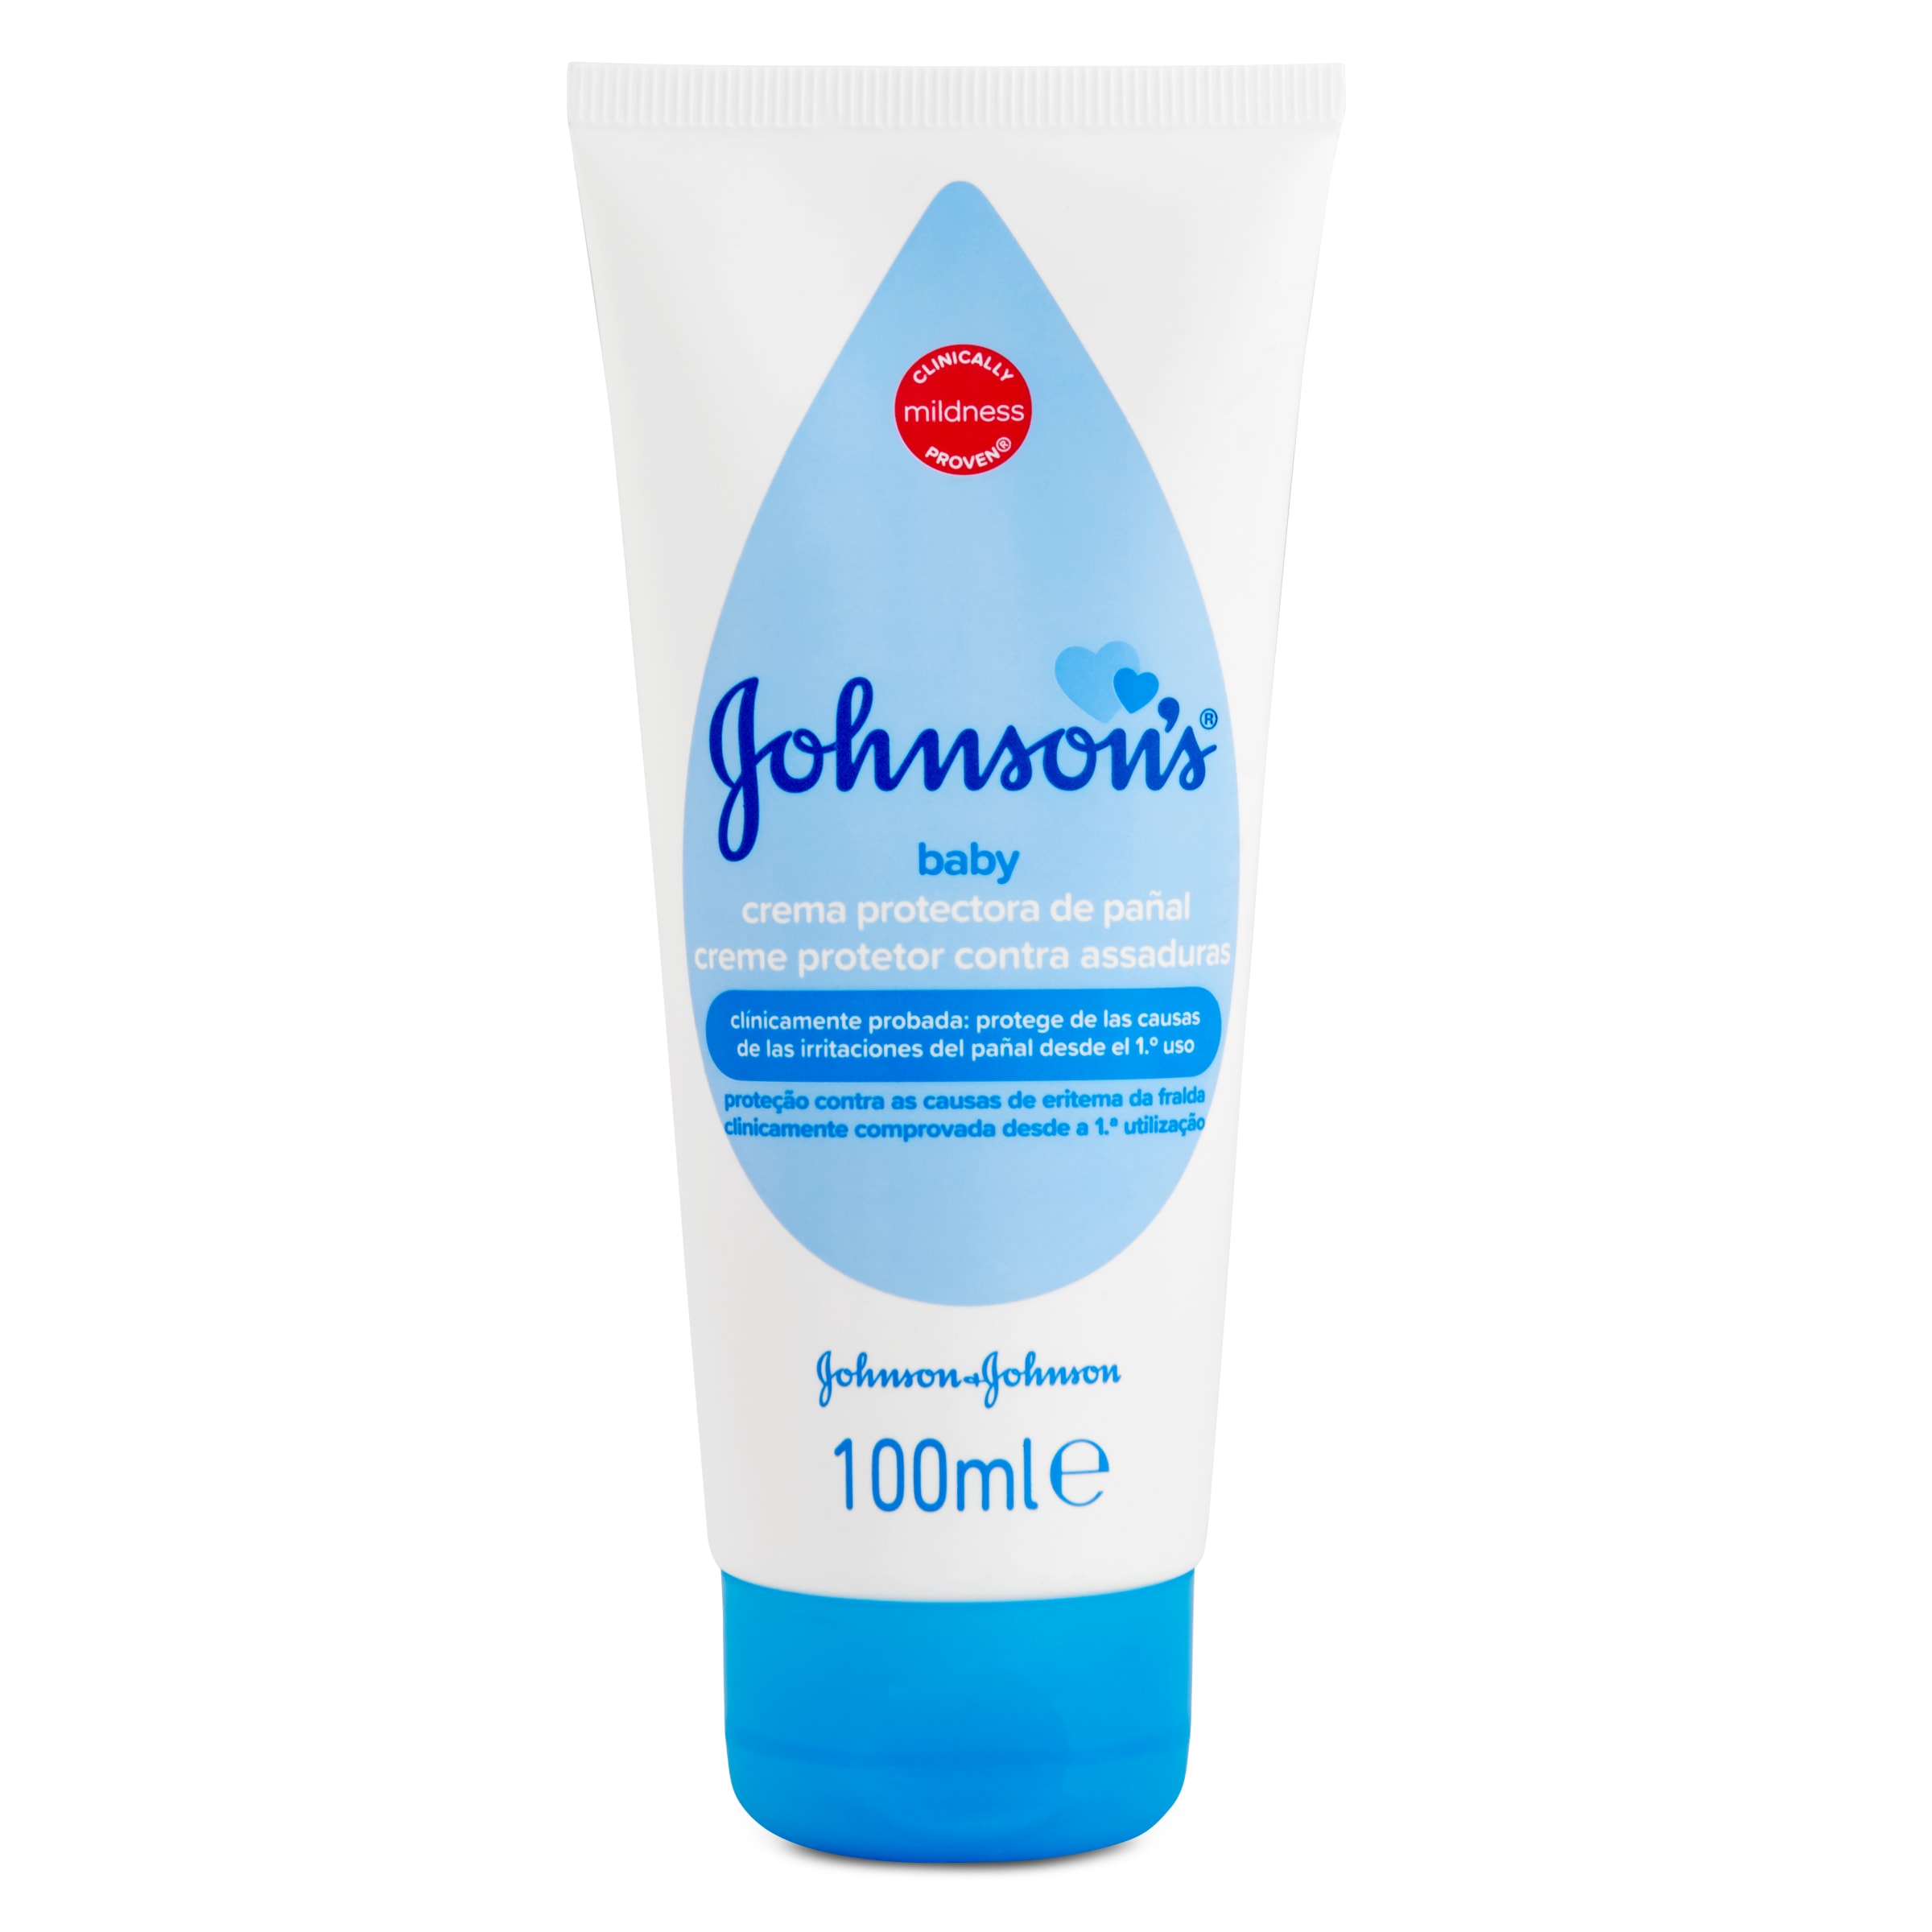 Crema de pañal JOHNSON 100 ML - Supermercados DIA